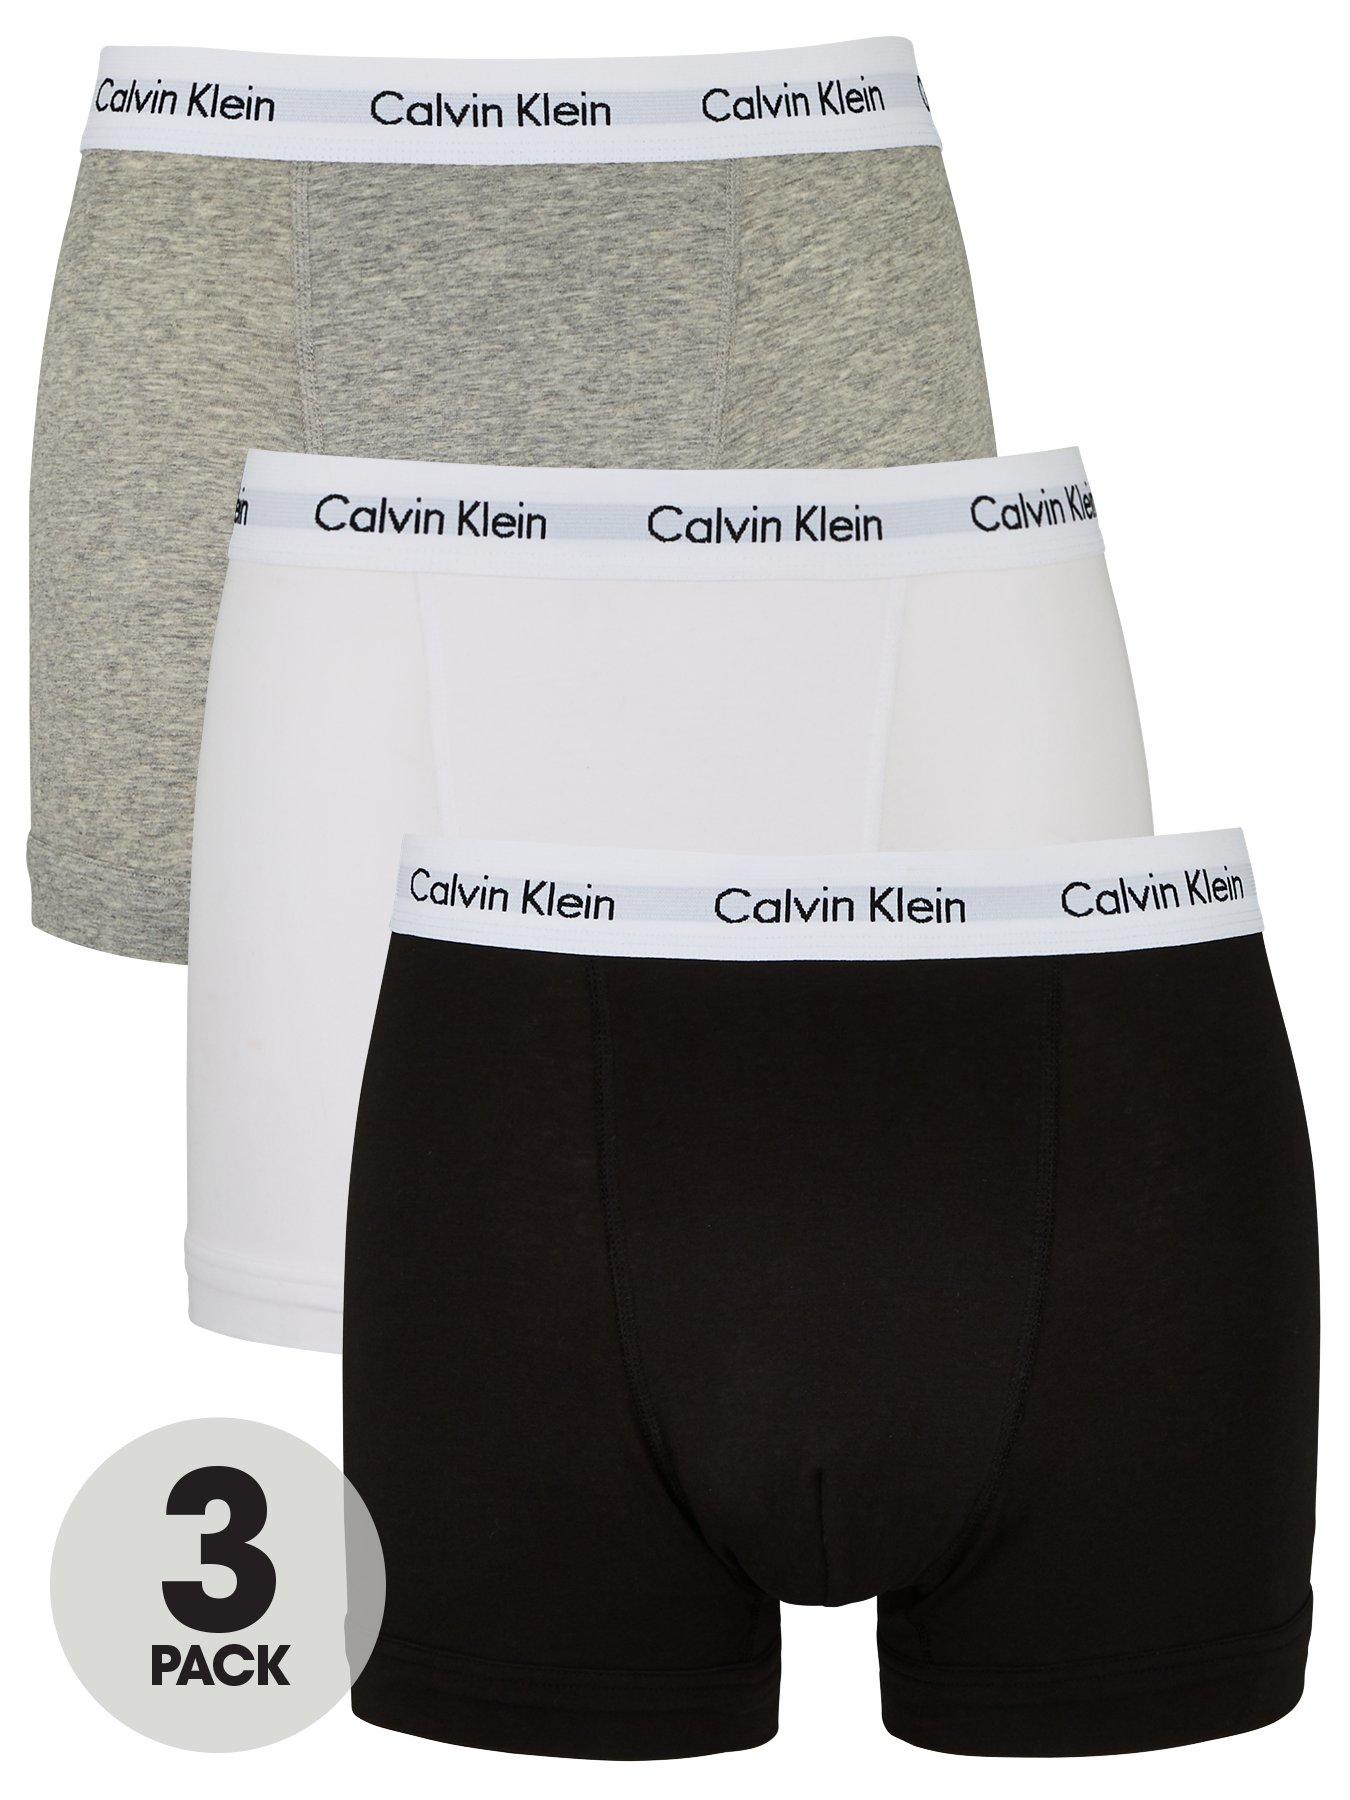 calvin klein boxers next